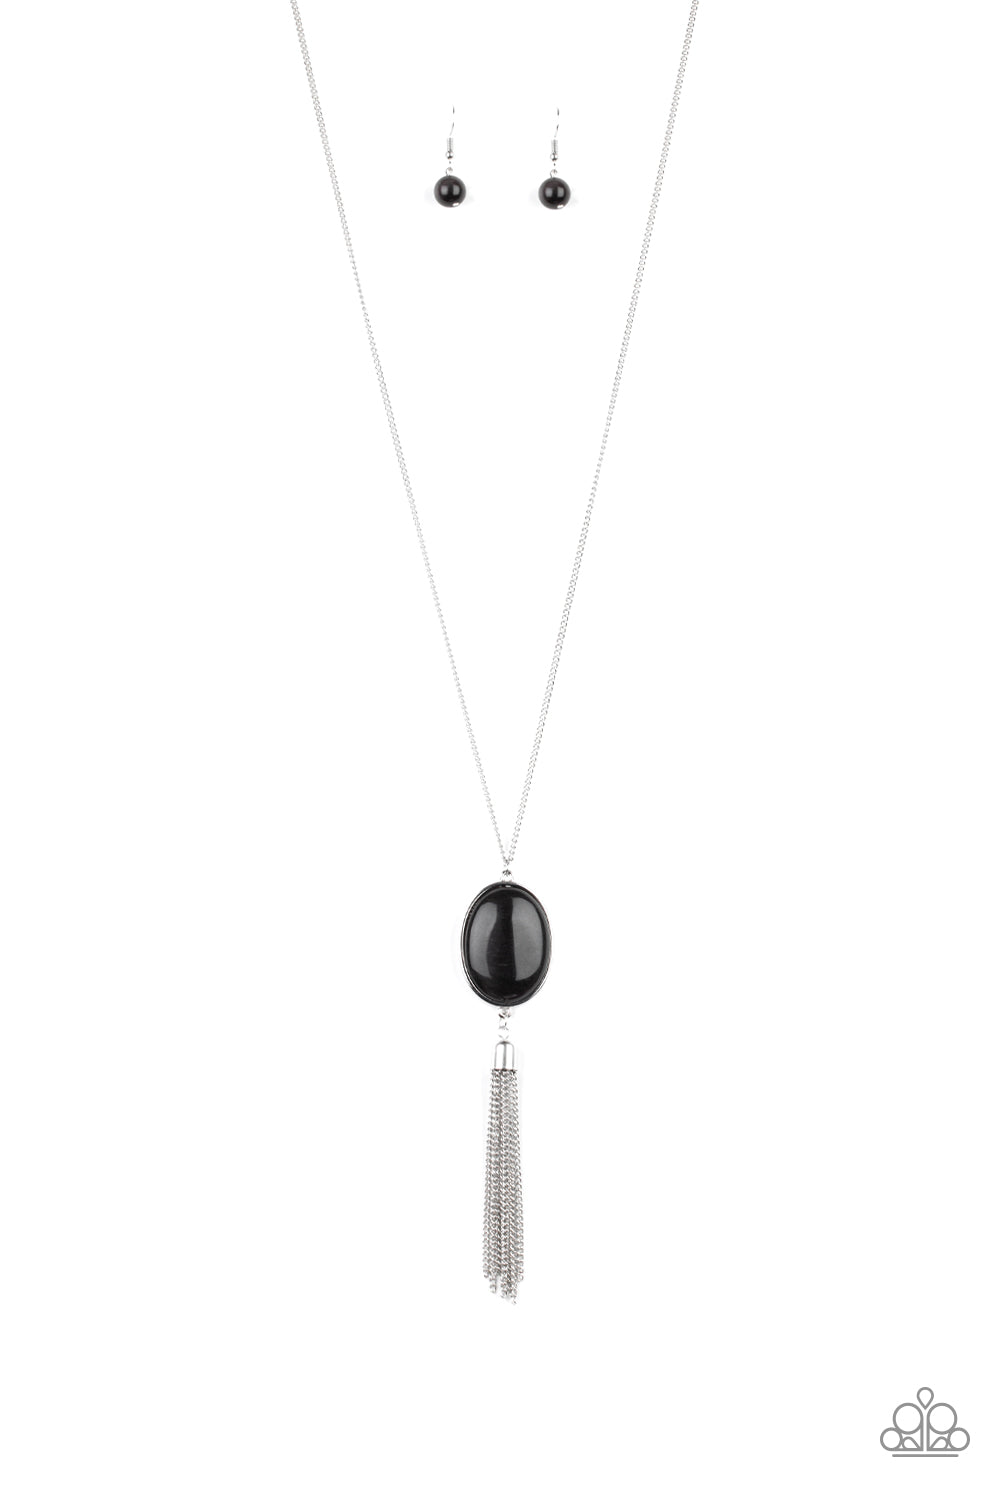 Tasseled Tranquility - black - Paparazzi necklace